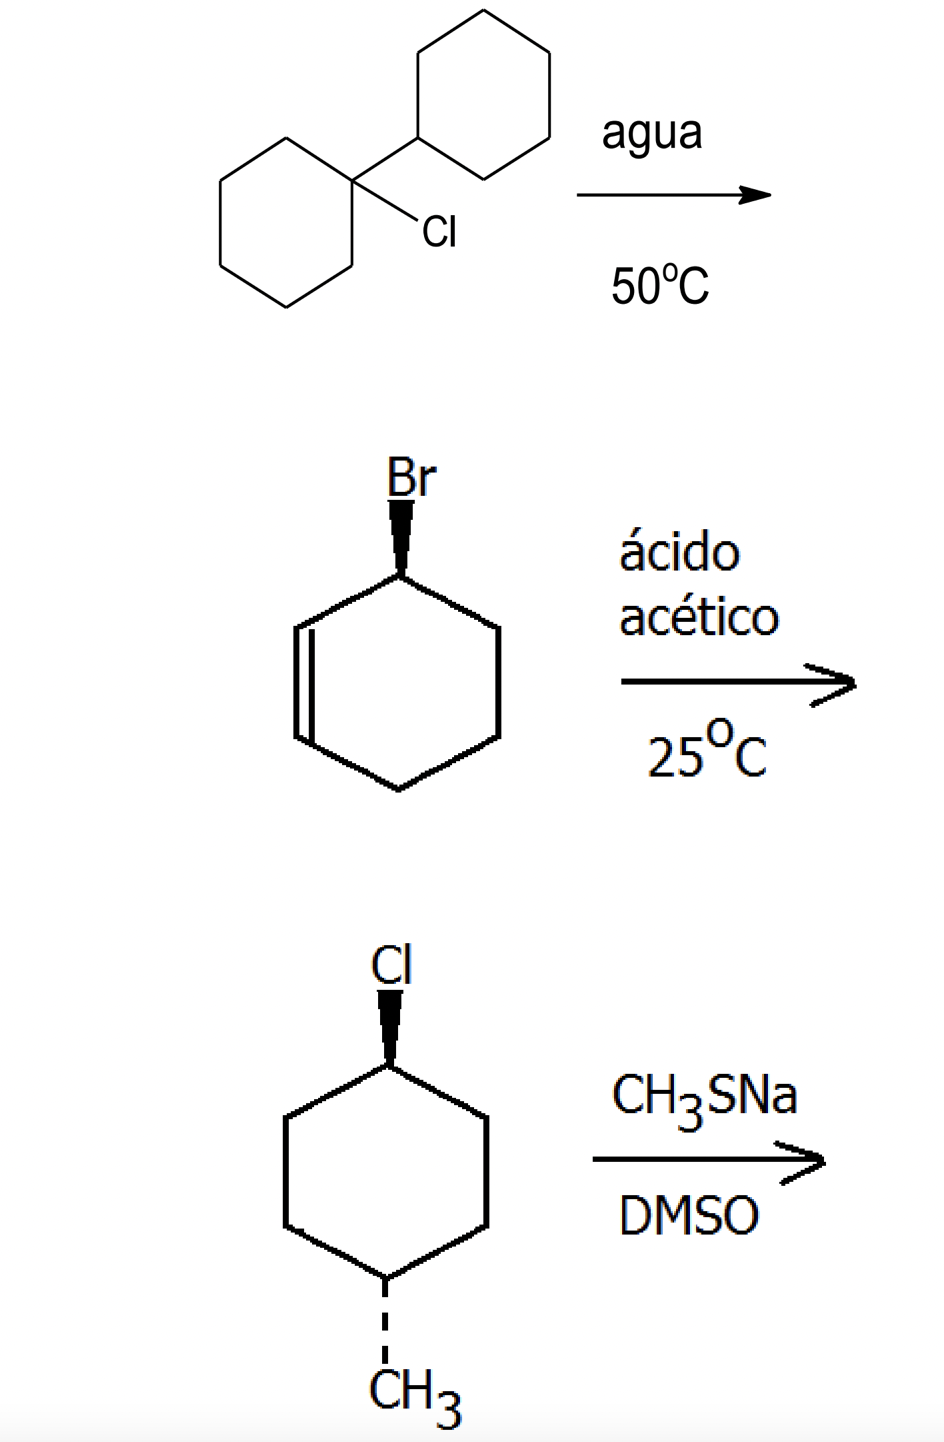 CI
Br
CI
CH3
agua
50°C
ácido
acético
25°C
CH3 SNa
DMSO